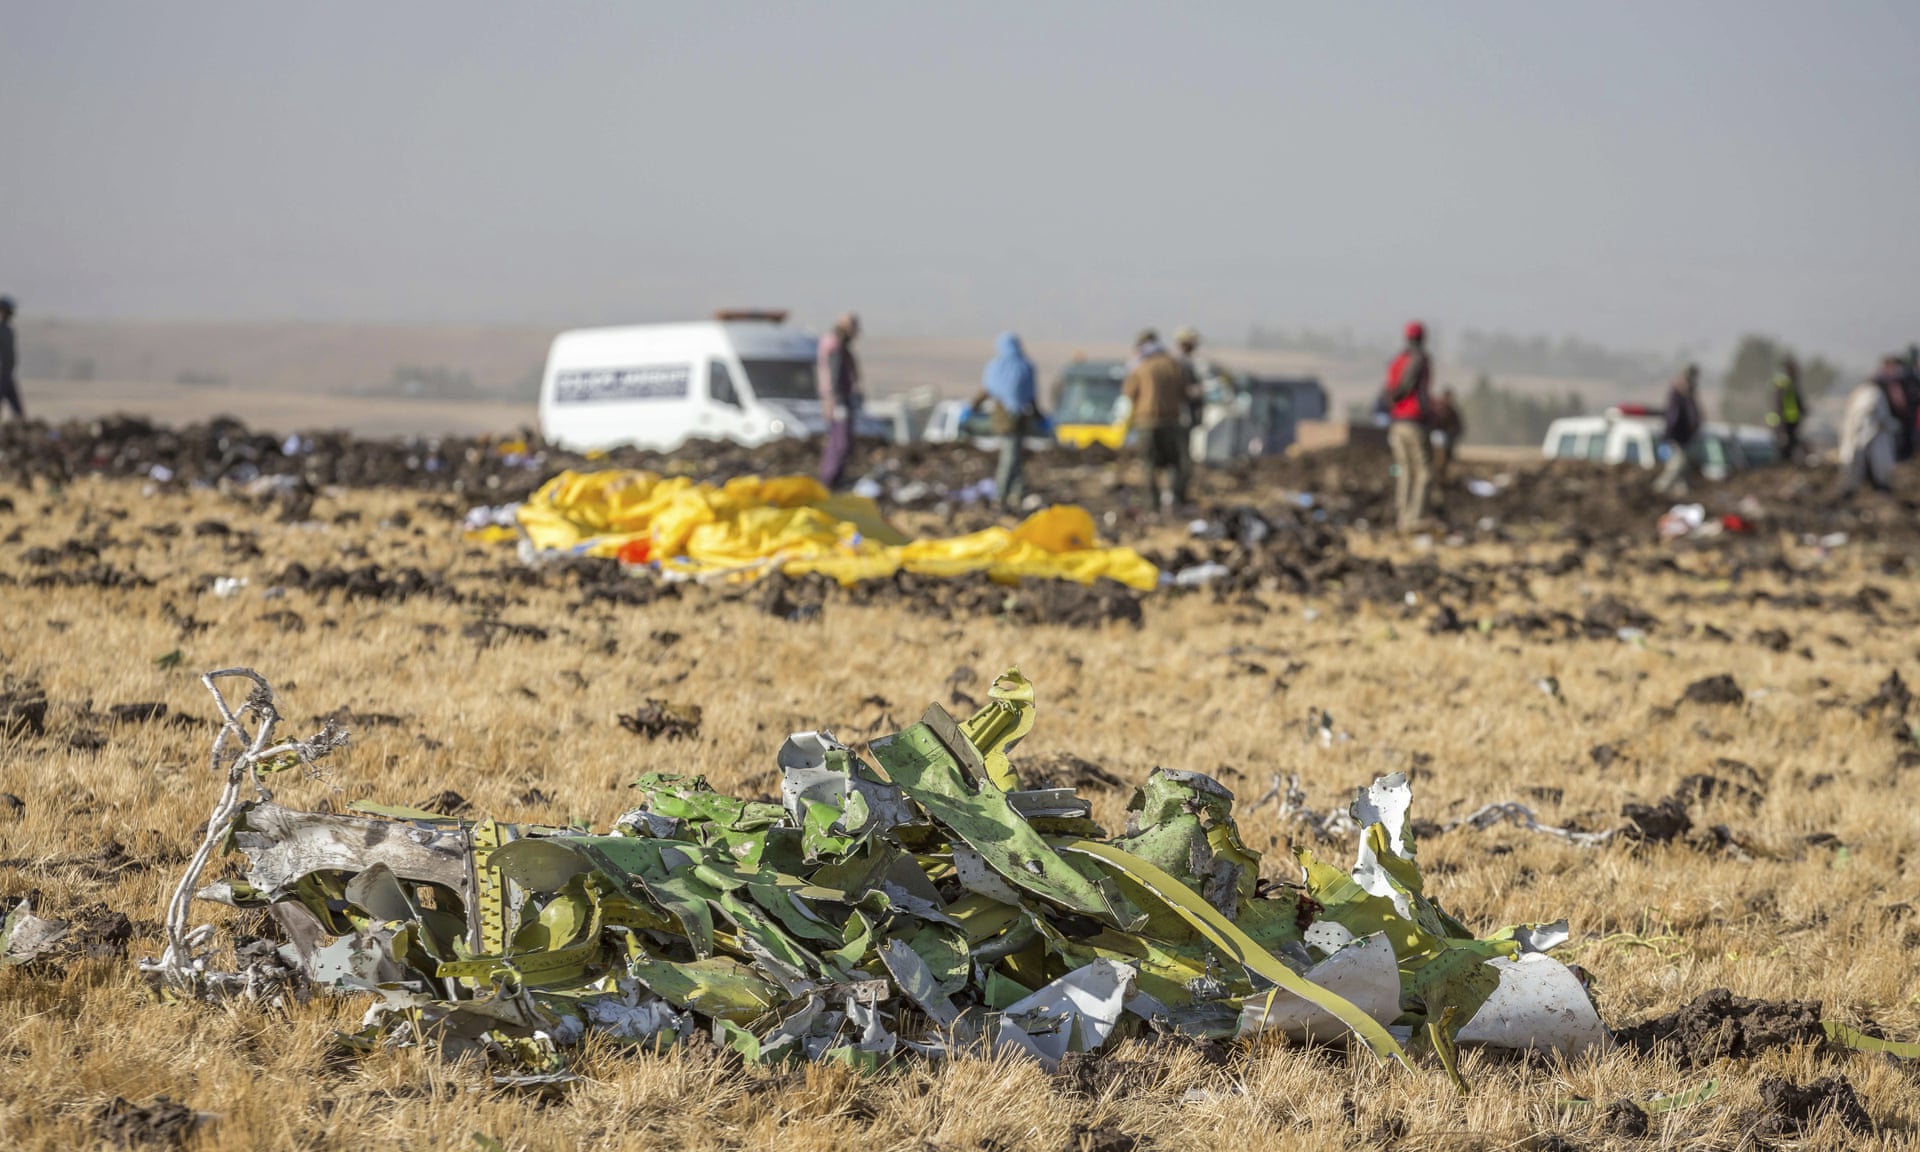 埃塞俄比亚航空公司737max坠毁波音防失速功能错误反复启动